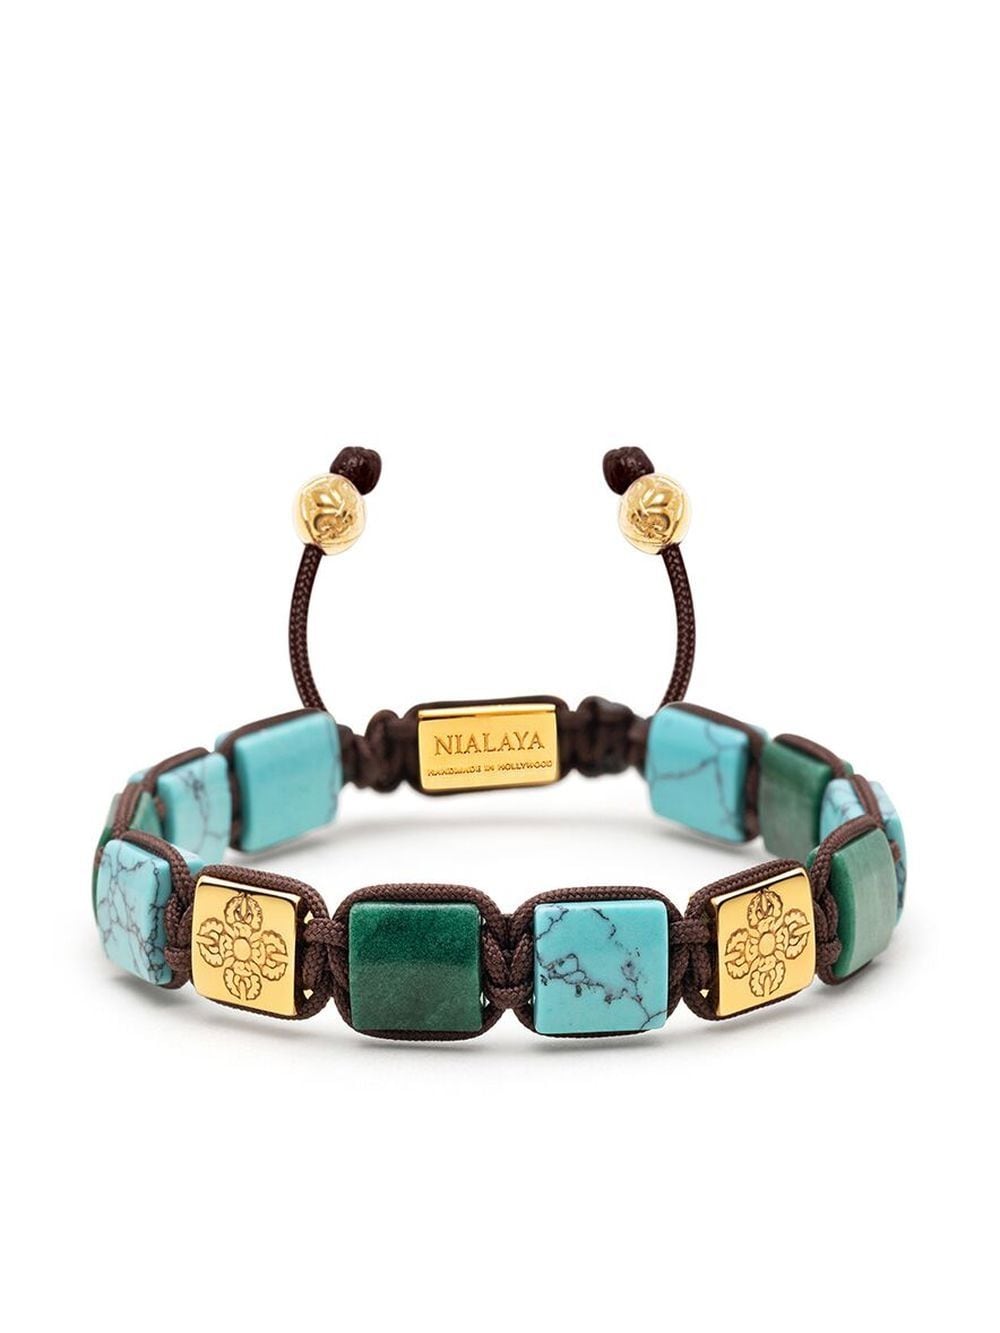 nialaya jewelry bracelet the dorje flatbread - bleu